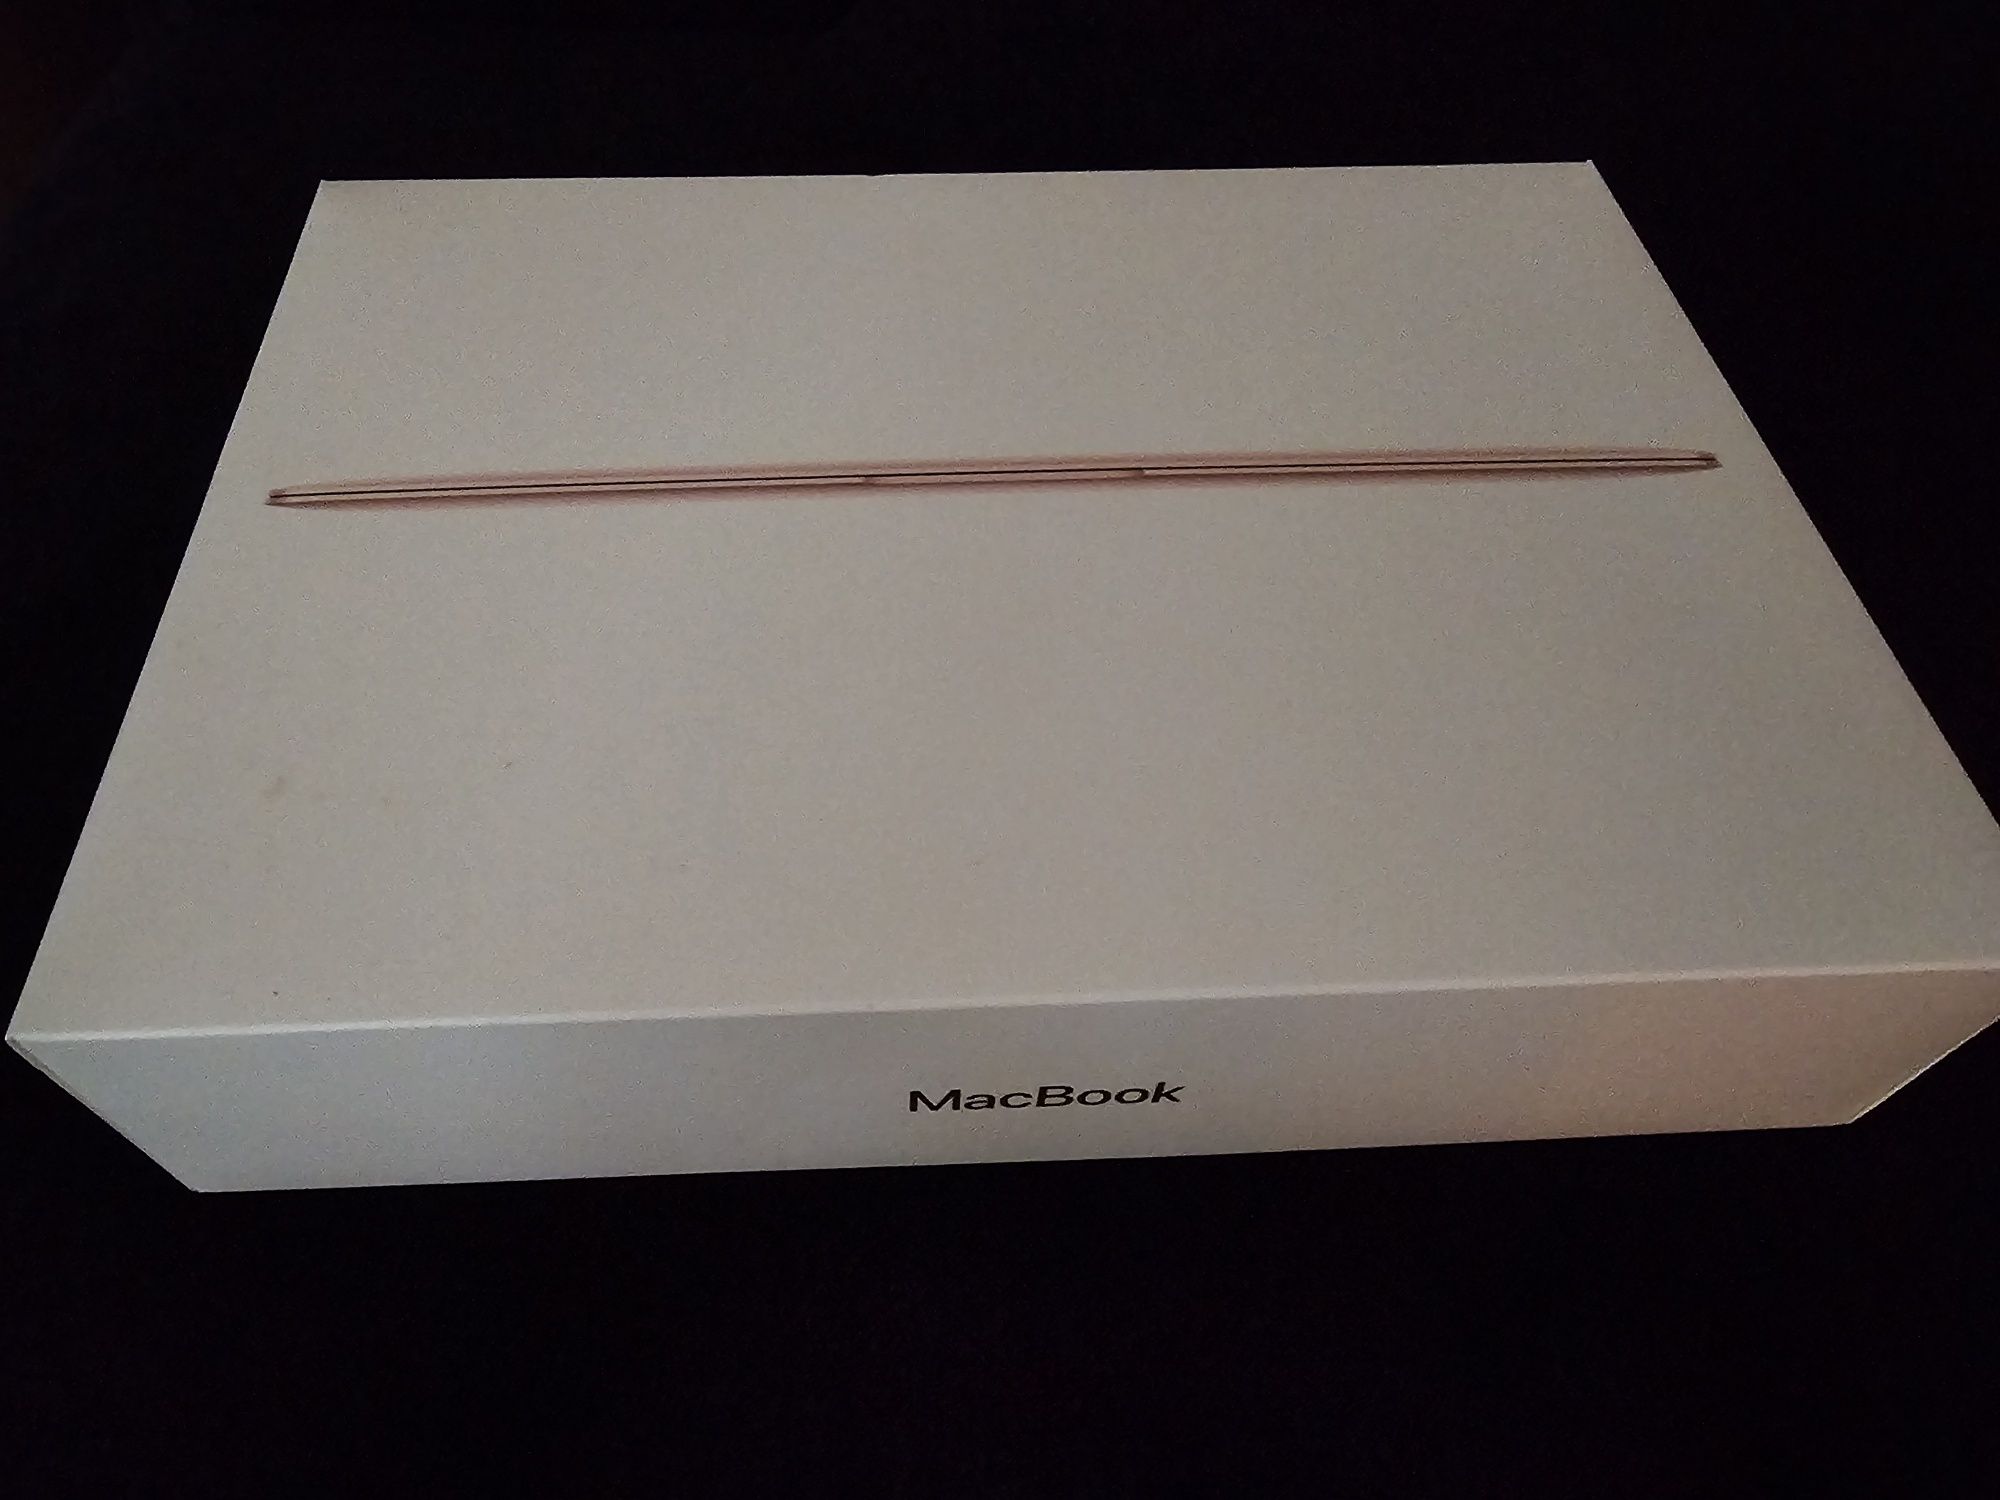 McBook 12 polegadas 8 GB Rosa Gold NOVO